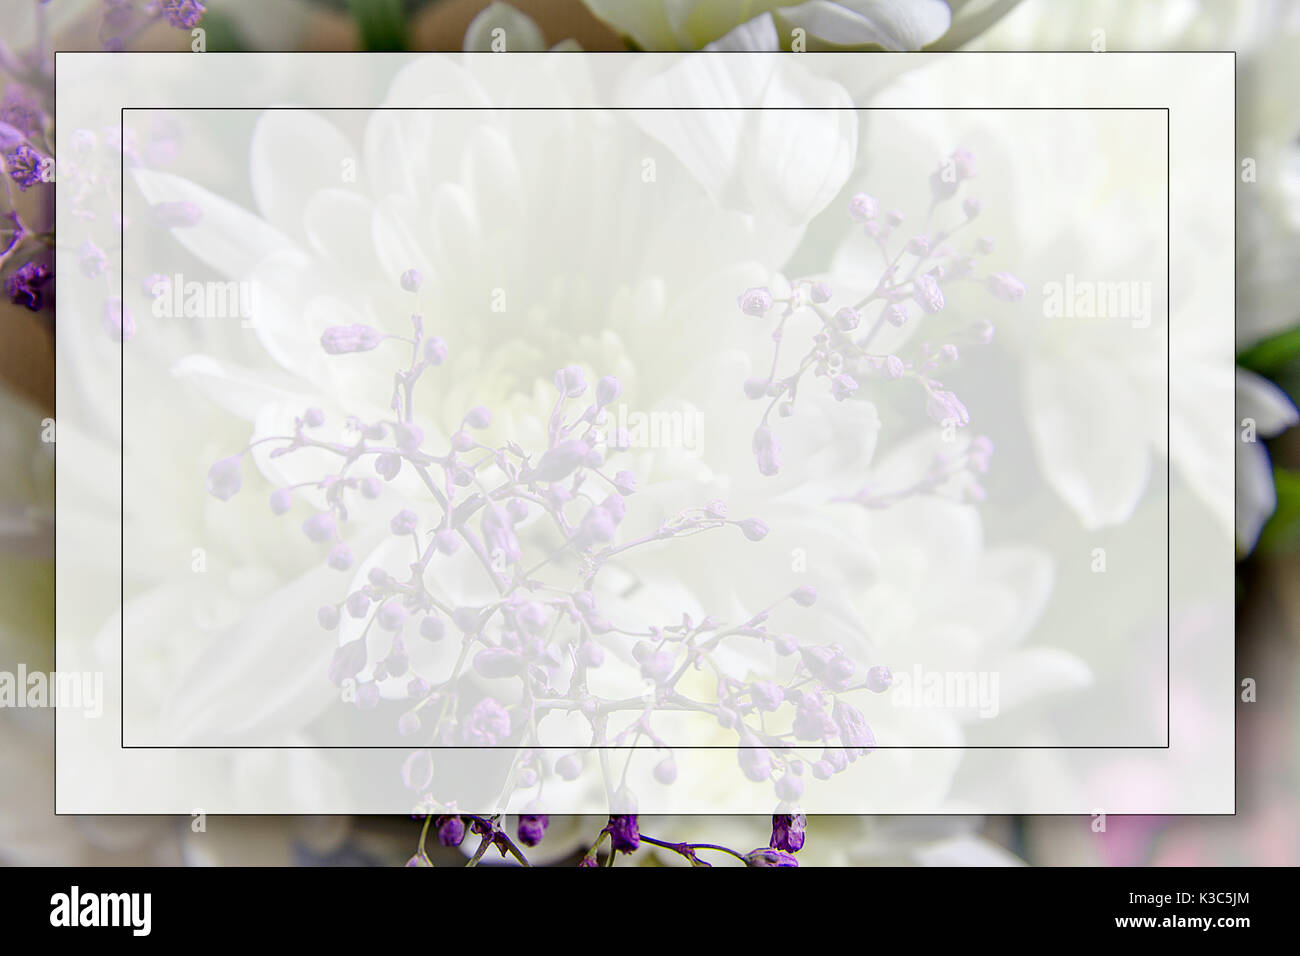 Ajoutez votre propre texte 'Box' sur un fond de fleurs lilas. L'image a été prise le 15 février 2015 Banque D'Images